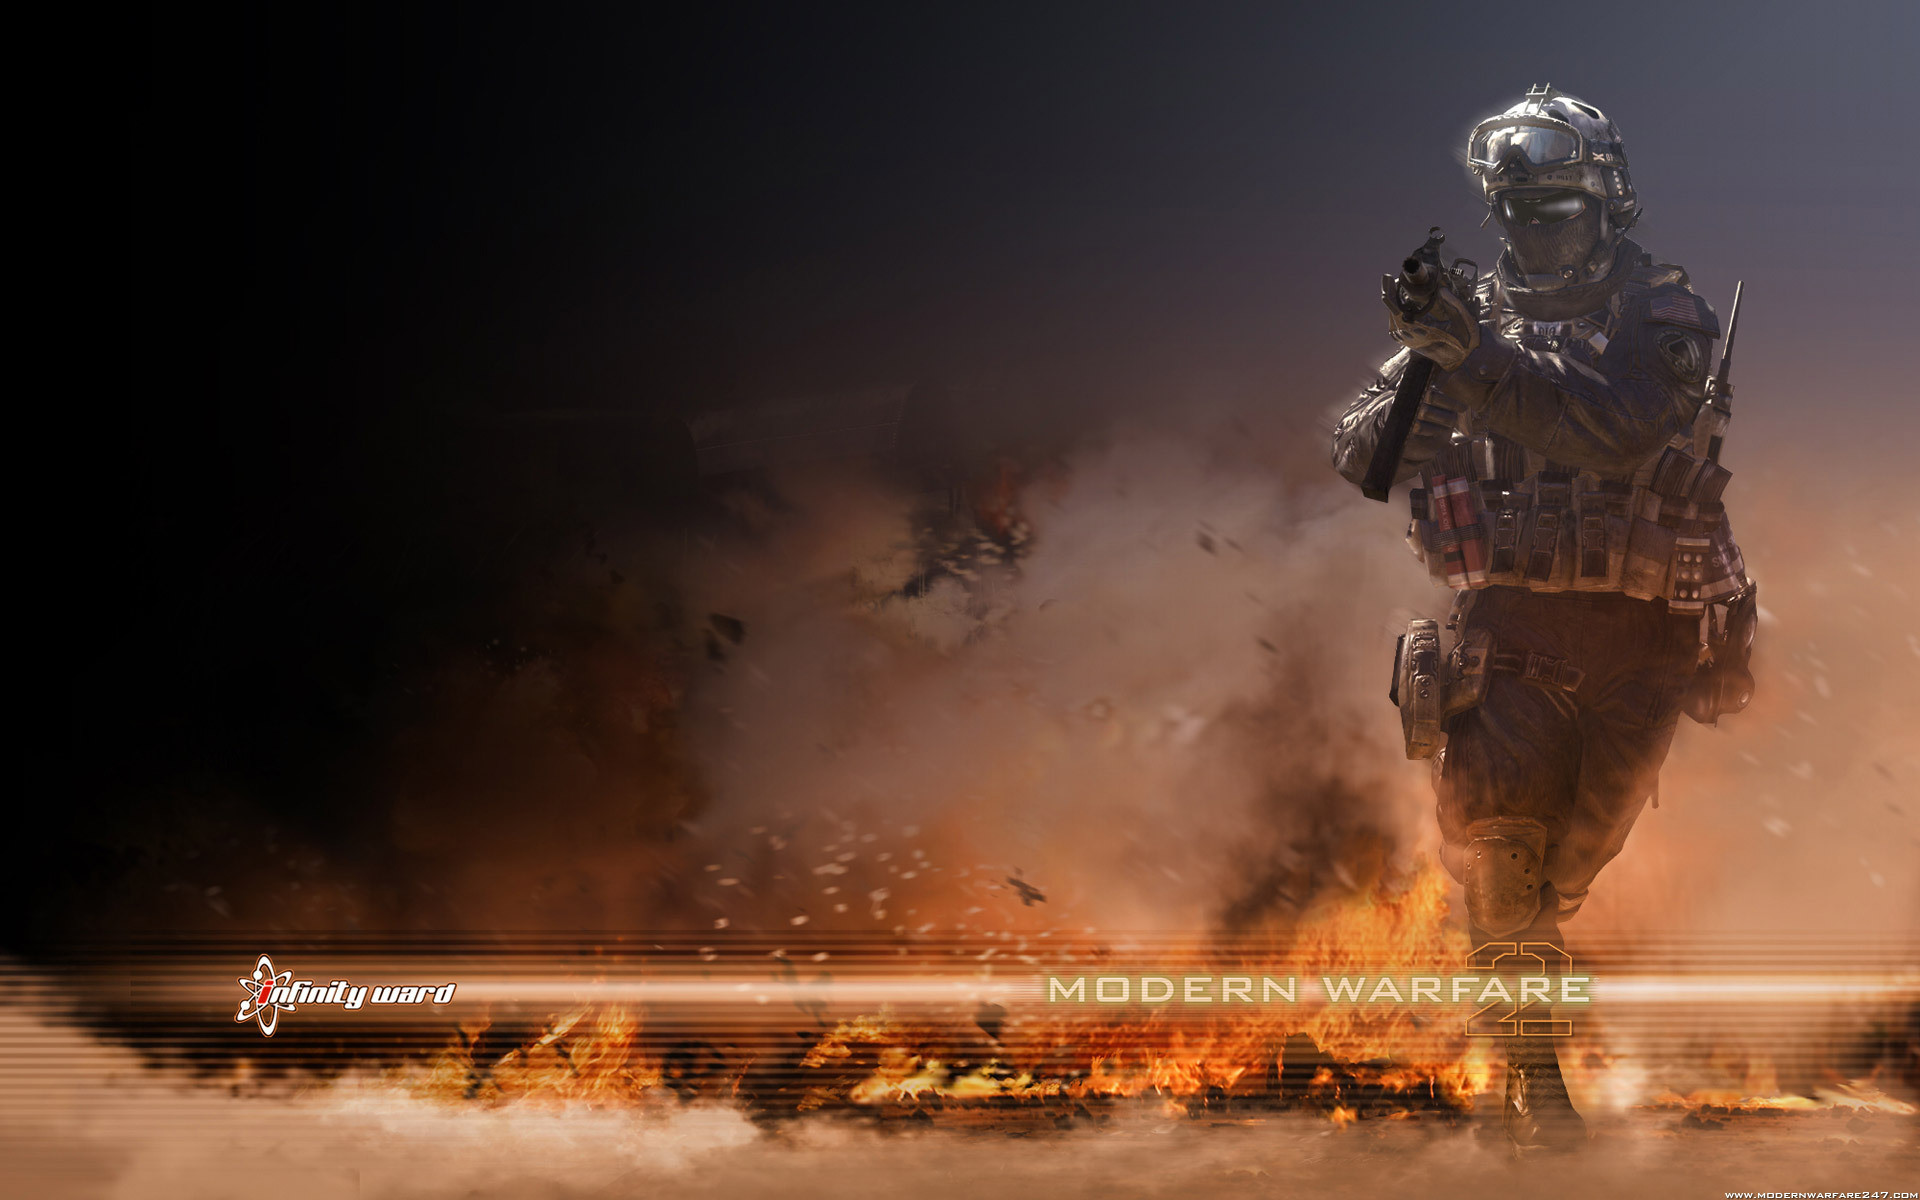 Modern Warfare 2 Wallpapers - Top 15 Best Modern Warfare 2 Wallpapers  Download